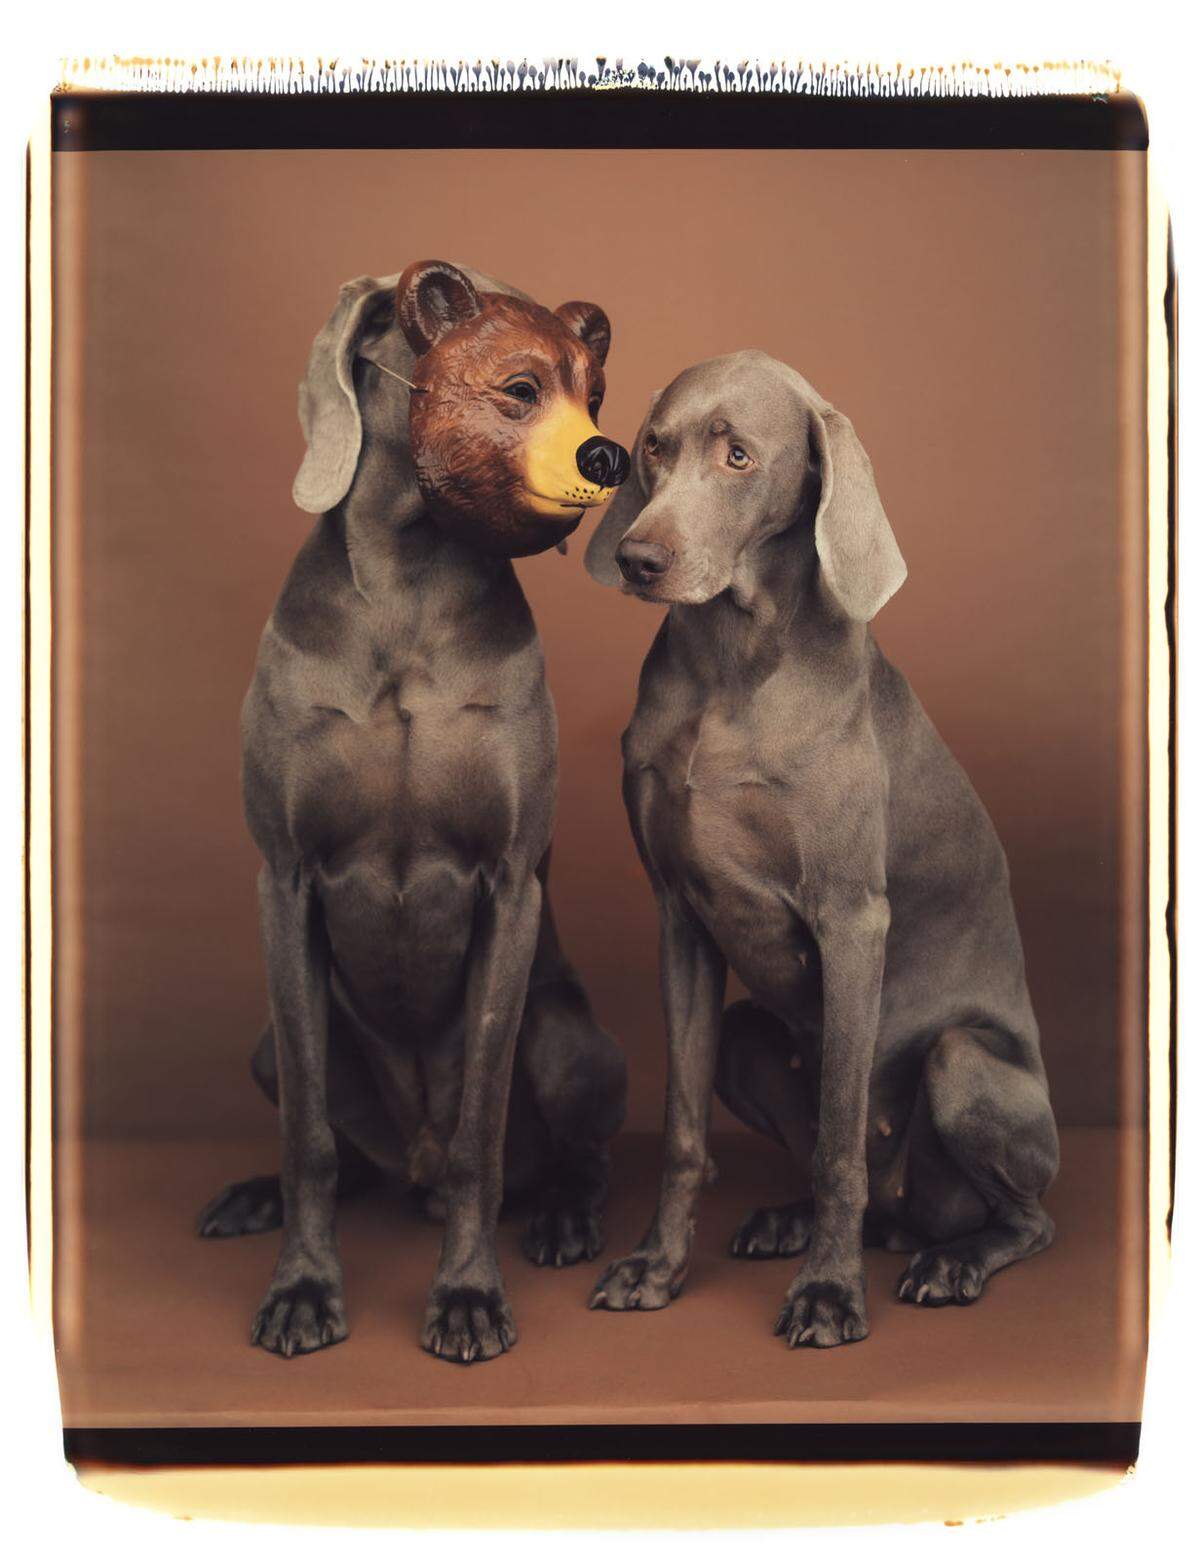 In manchen seiner Fotos stellt Wegman mit seinen Hunden (Man Ray und Fay Ray sollten zahlreiche Nachfolger derselben edlen Rasse haben) klassische Porträts nach, auf anderen setzt er ihnen eine Maske, eine Perücke oder gar ein anderes Fell auf. Etwa das eines Eisbären.